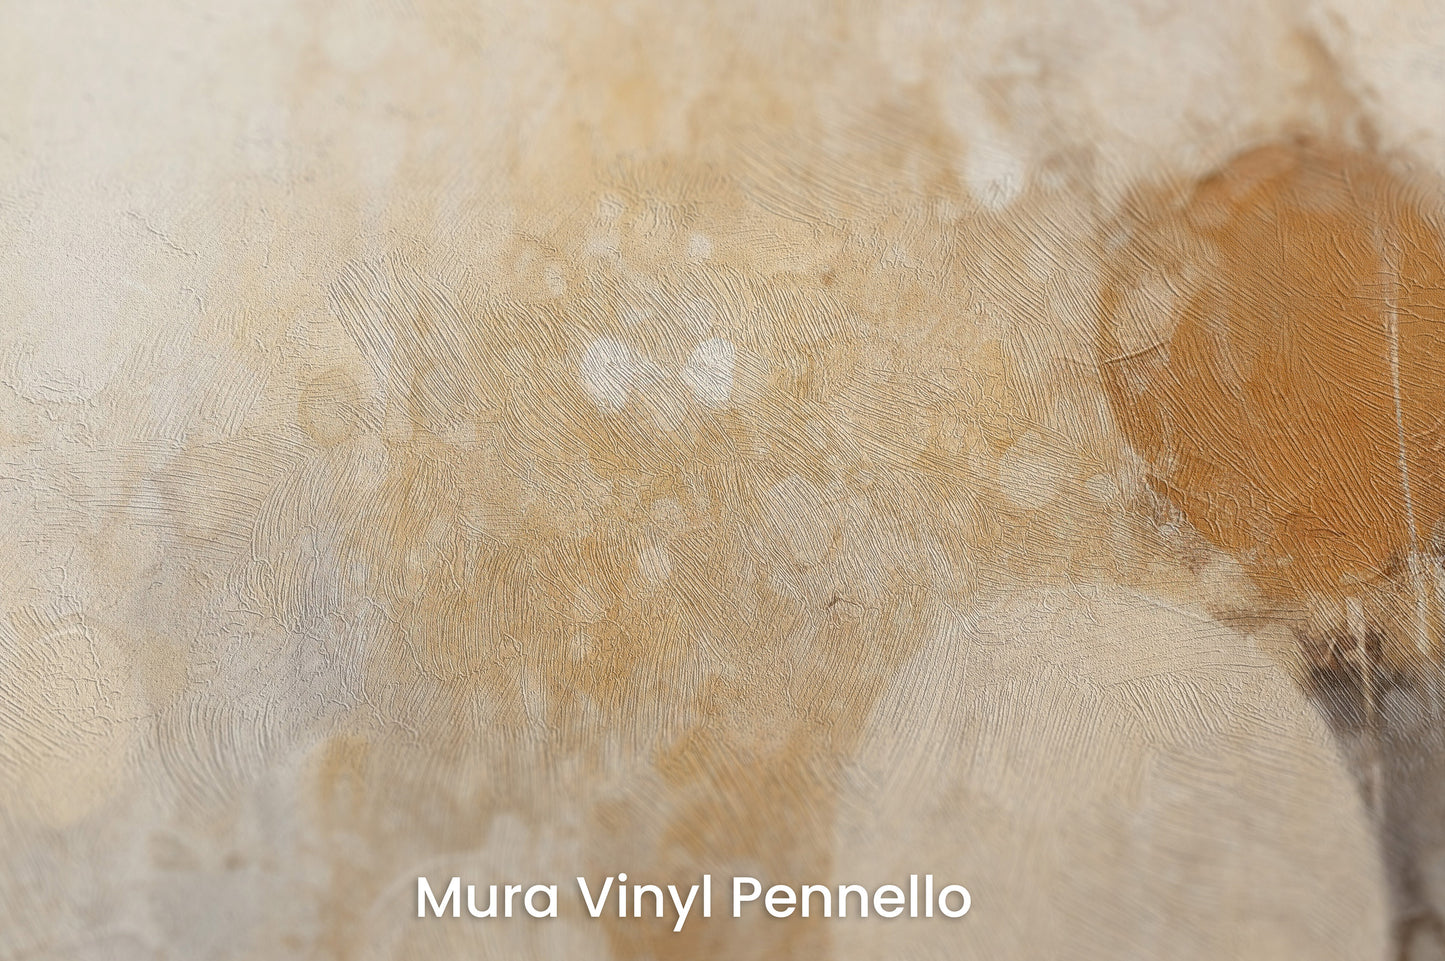 Zbliżenie na artystyczną fototapetę o nazwie DAWN HAZE ORBS na podłożu Mura Vinyl Pennello - faktura pociągnięć pędzla malarskiego.